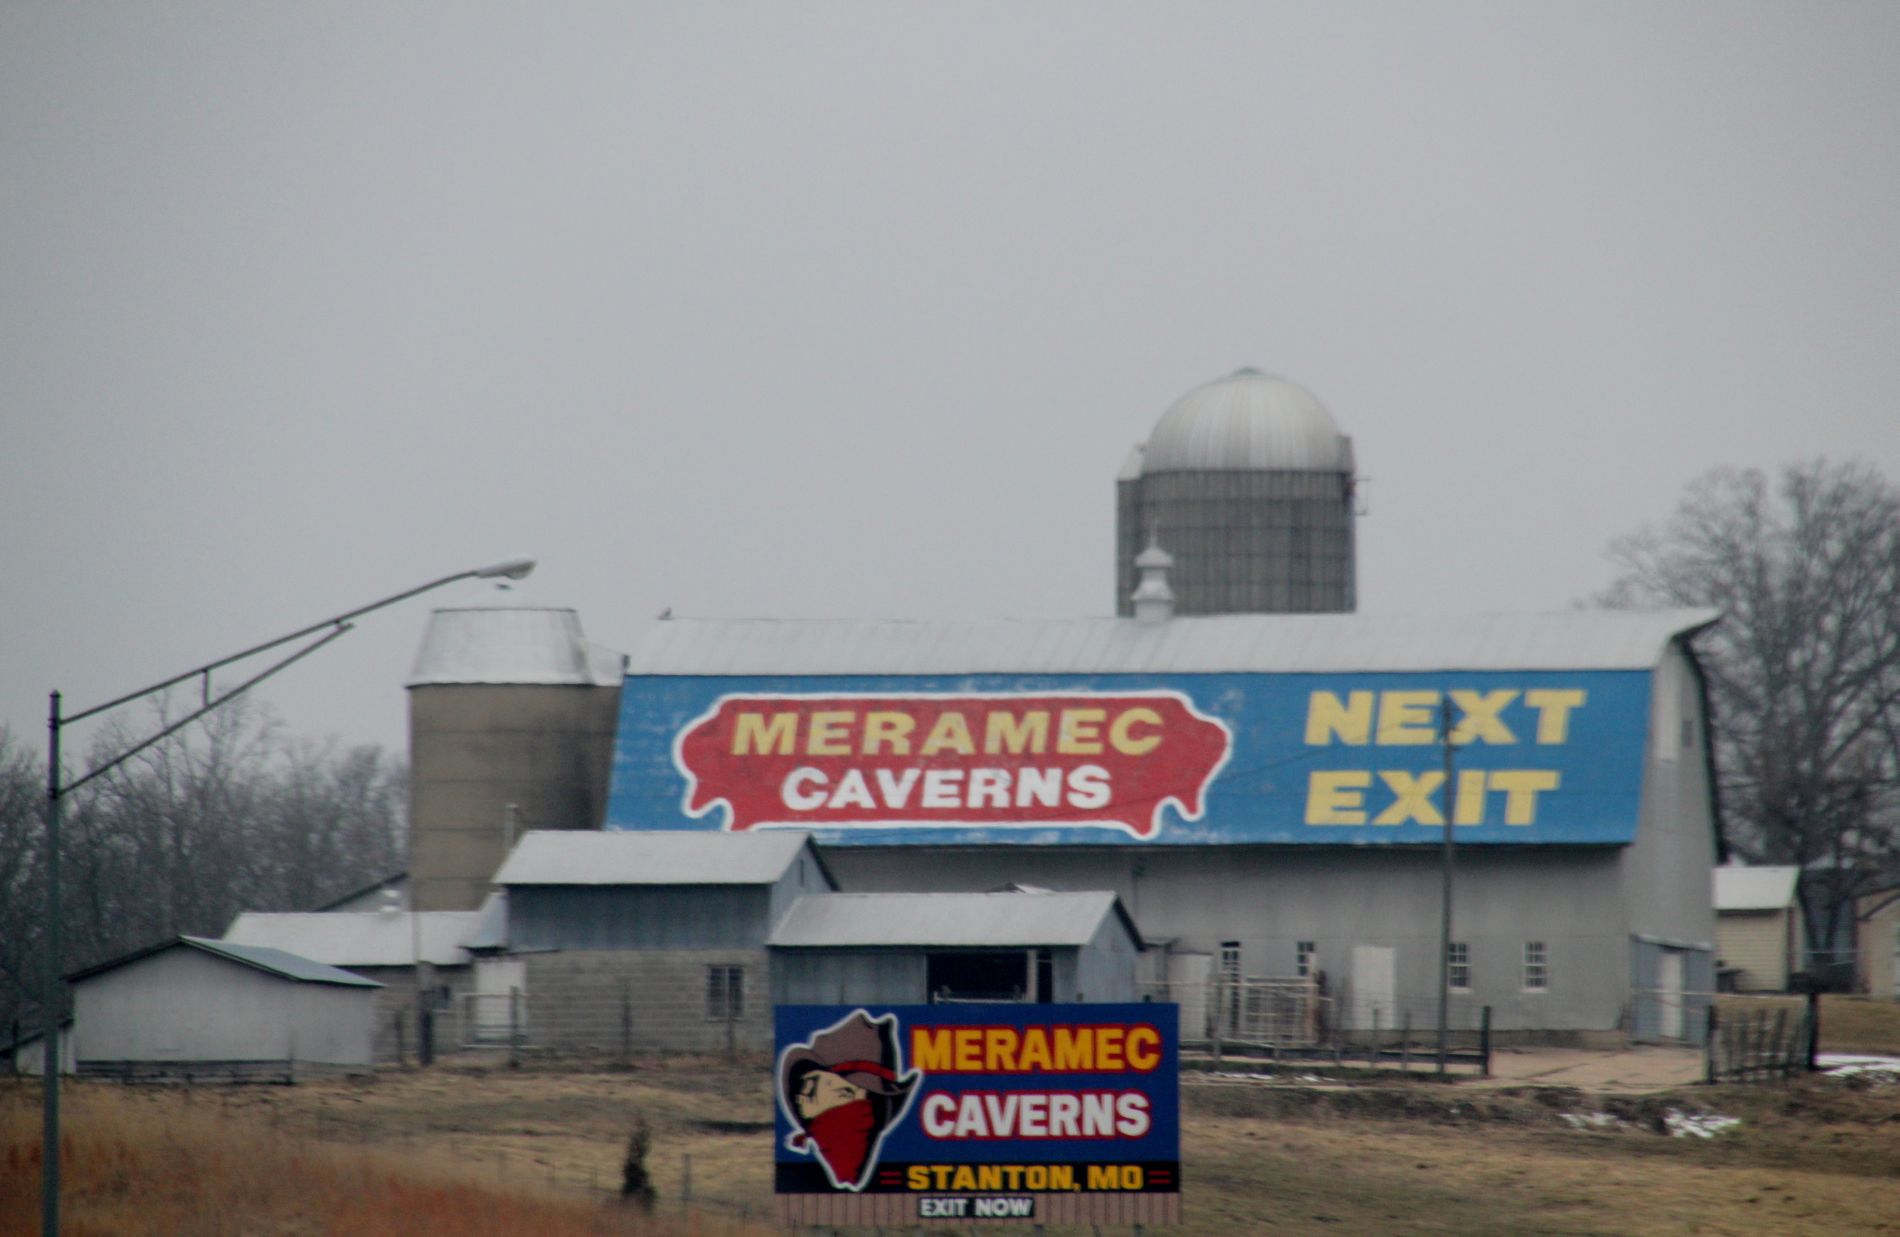 Meramec Caverns Next Exit sign in Stanton, Missouri